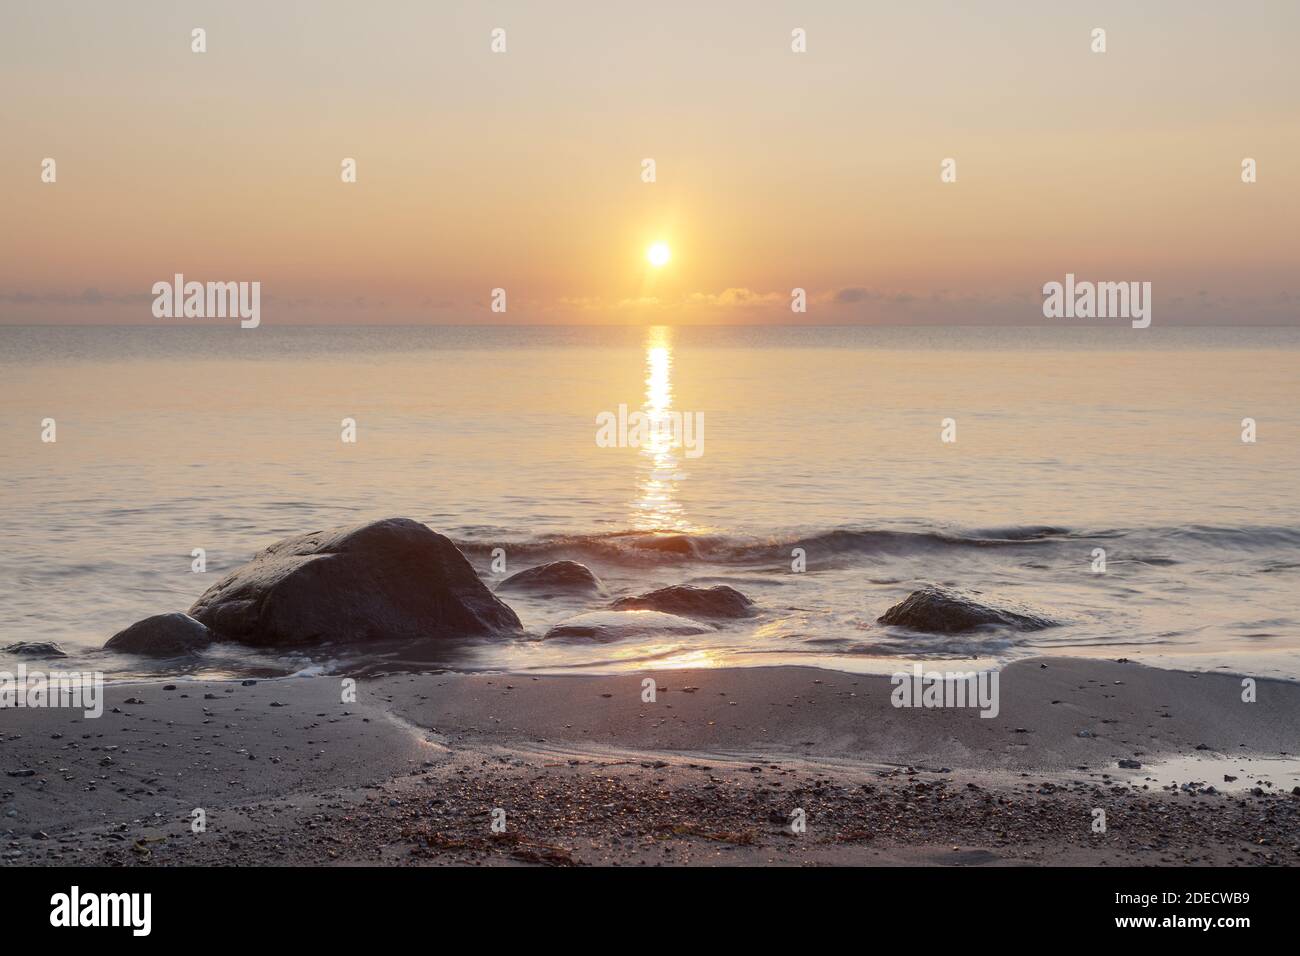 Géographie / Voyage, Allemagne, Schleswig-Holstein, isle Fehmarn, lever du soleil sur la plage de la mer Baltique, droits-supplémentaires-Clearance-Info-non-disponible Banque D'Images